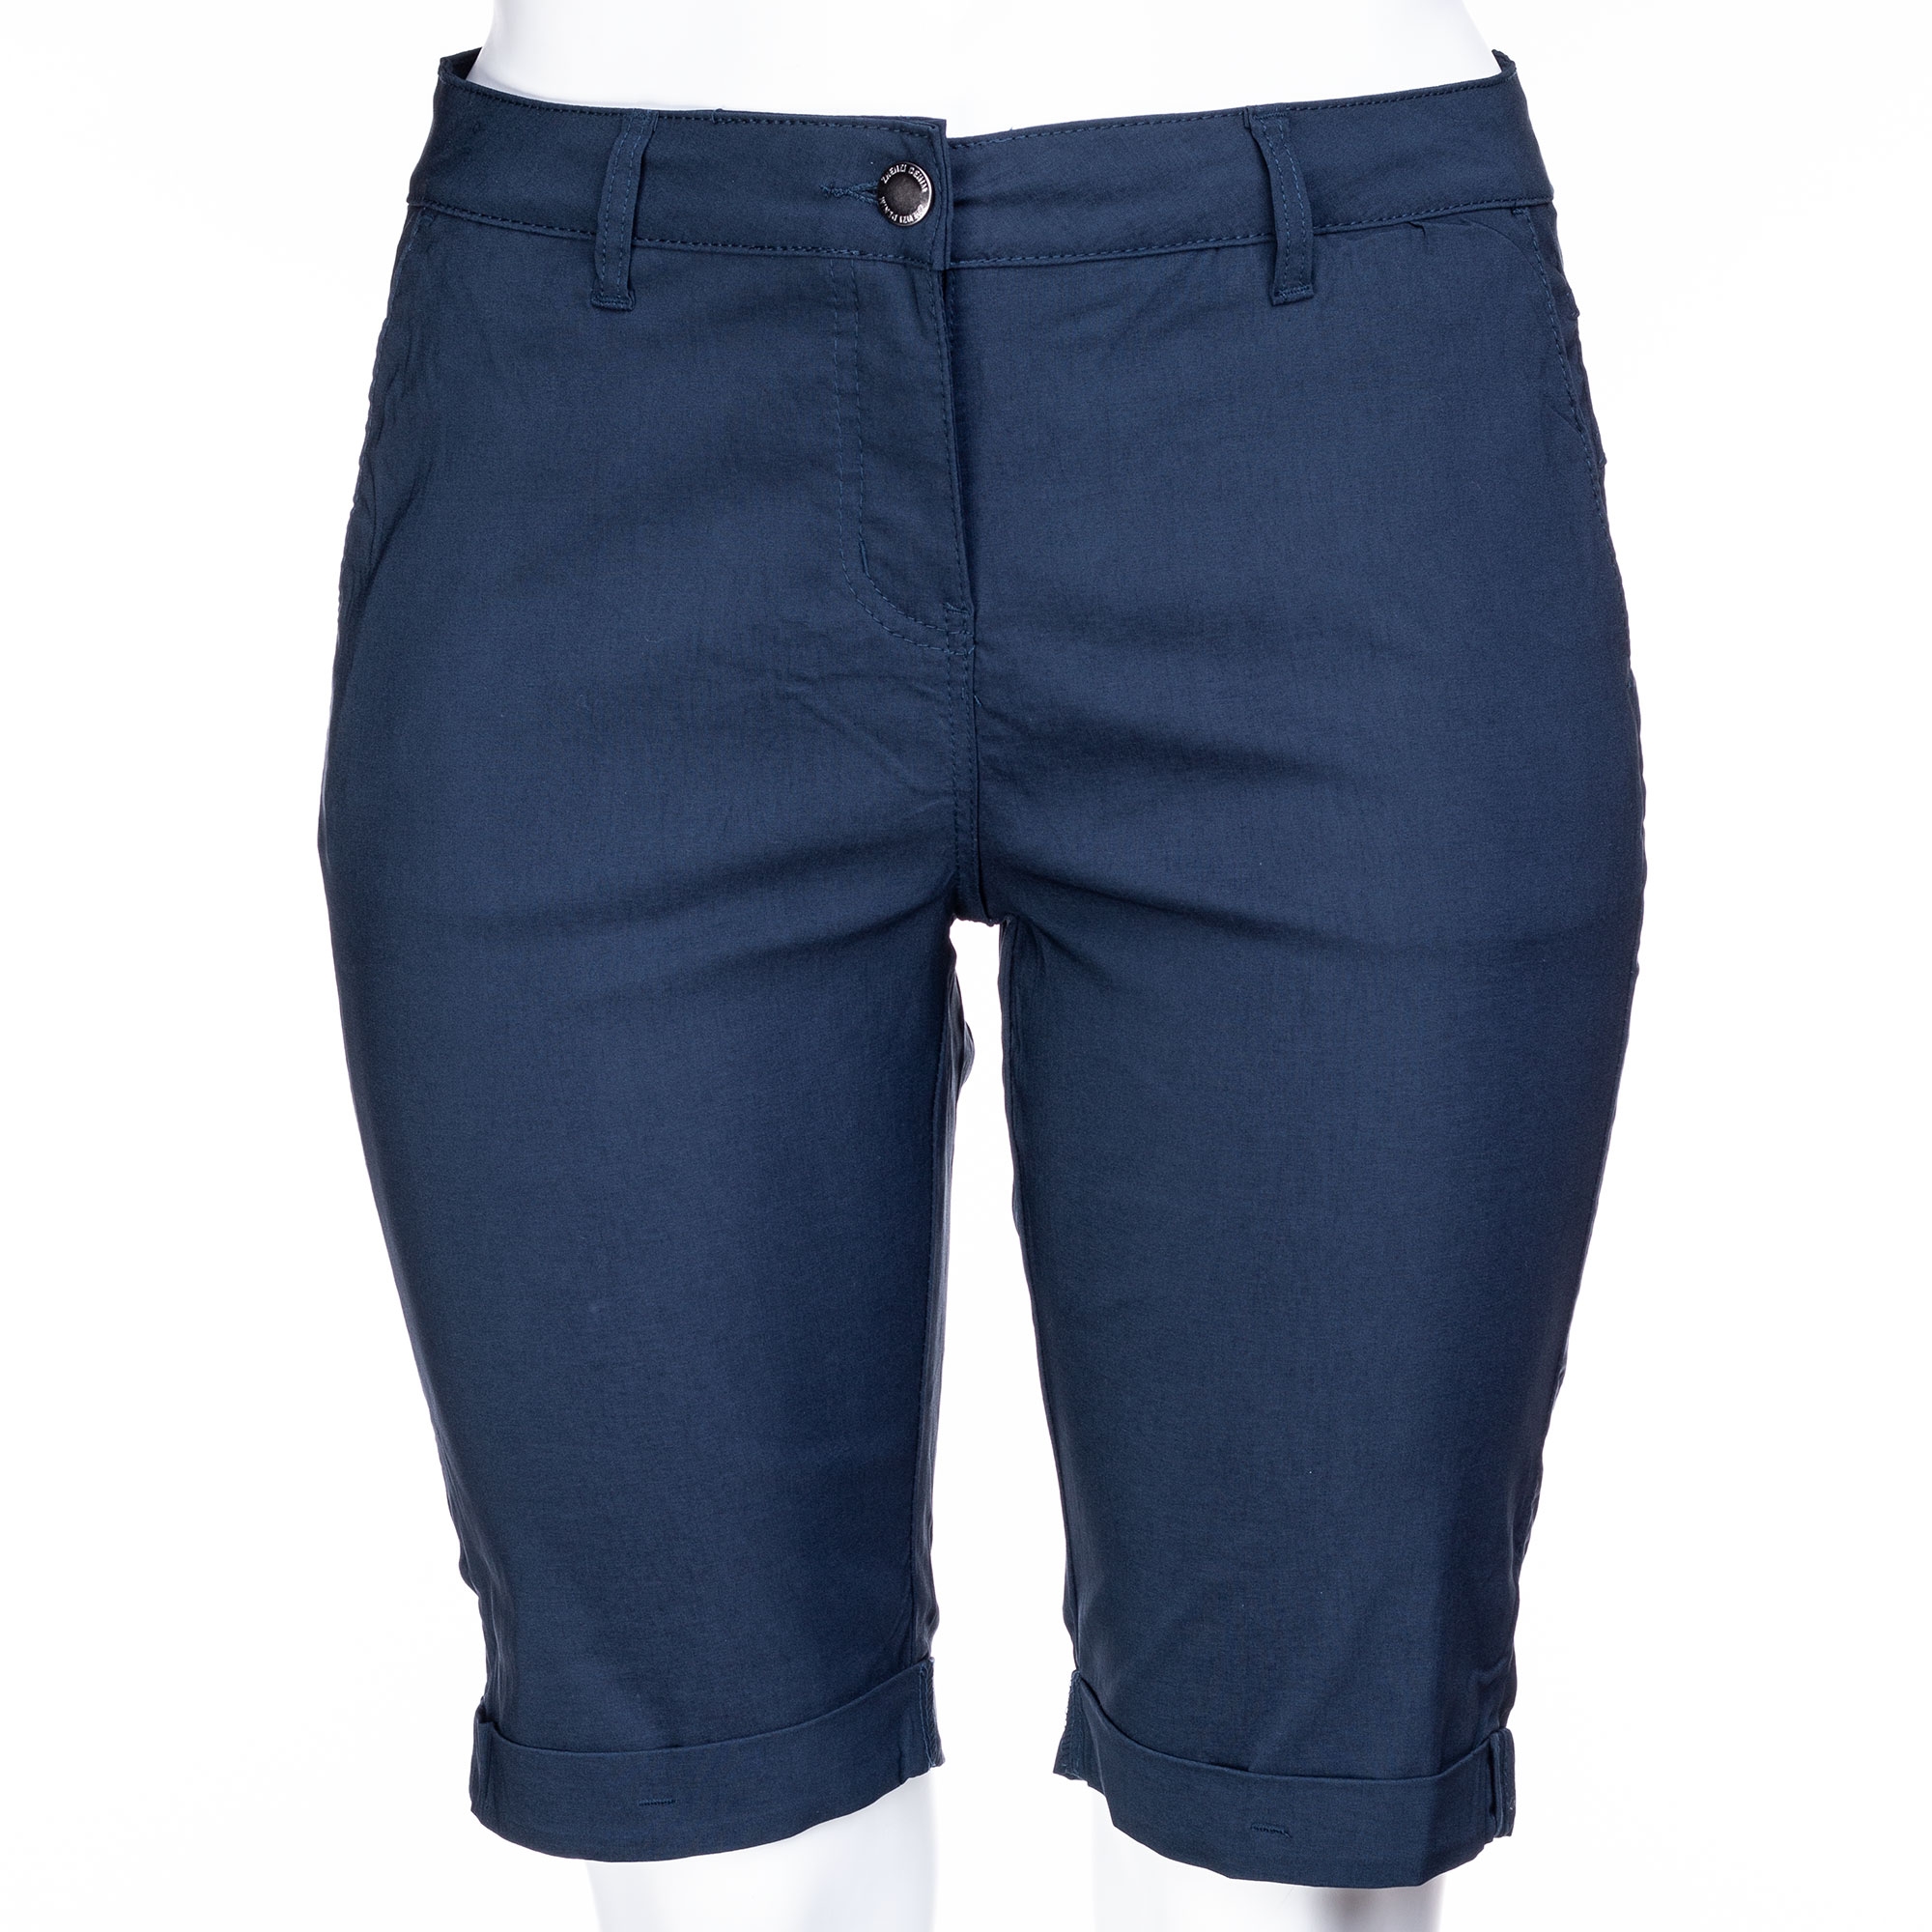 Marineblå shorts i bengalin kvalitet fra Zhenzi